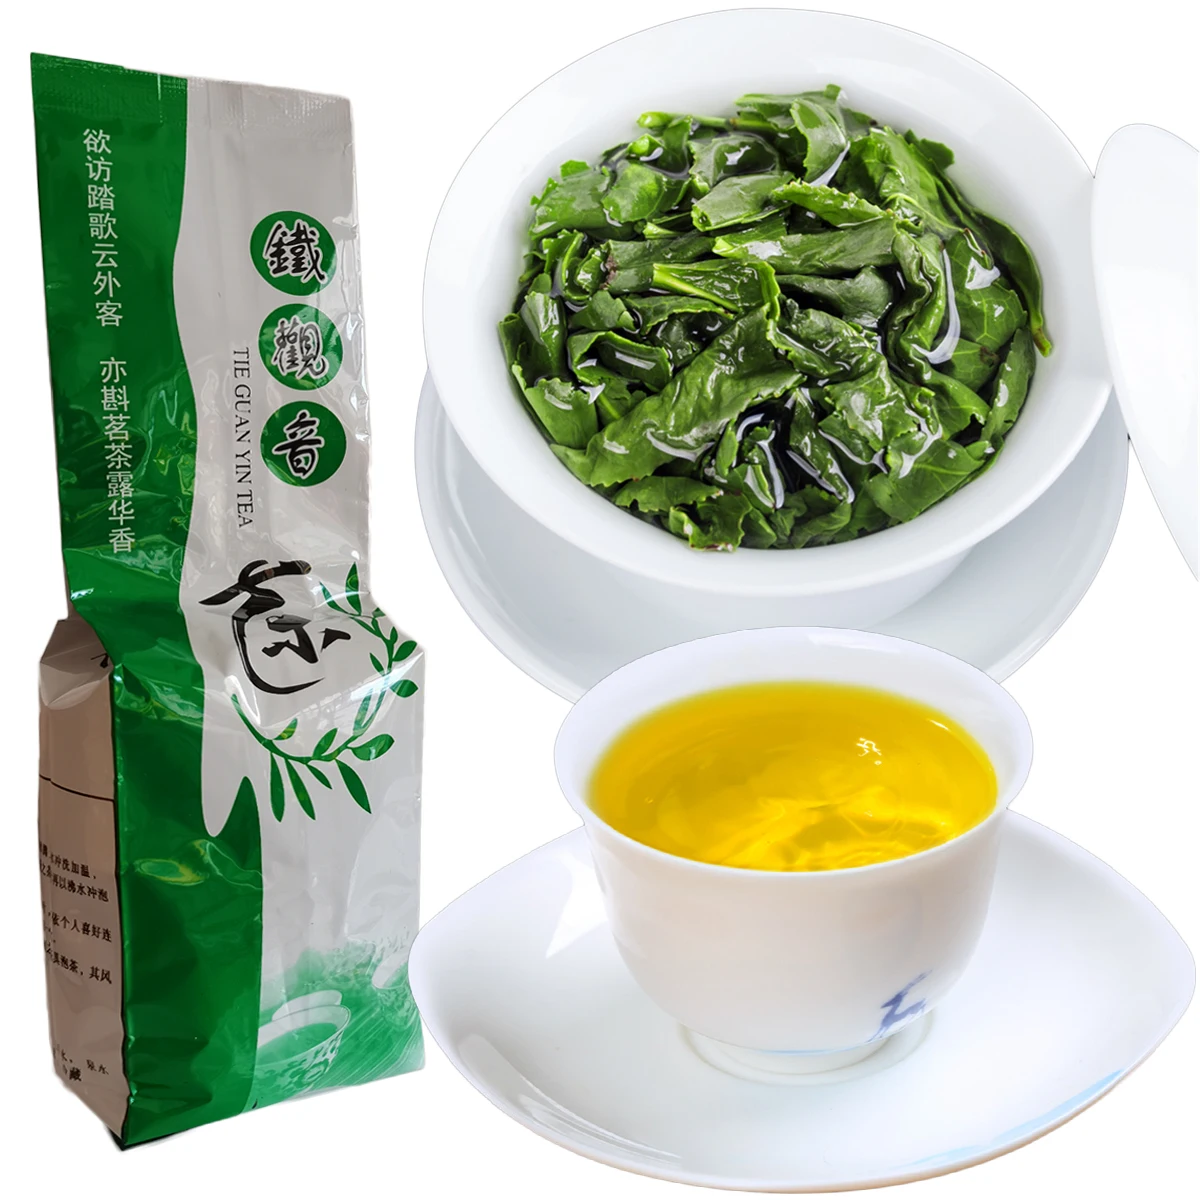 

1 Bag 125g China Anxi Tieguanyin Tea Tikuanyin Oolong Tea Organic Health Care Tie guan yin Green Tea